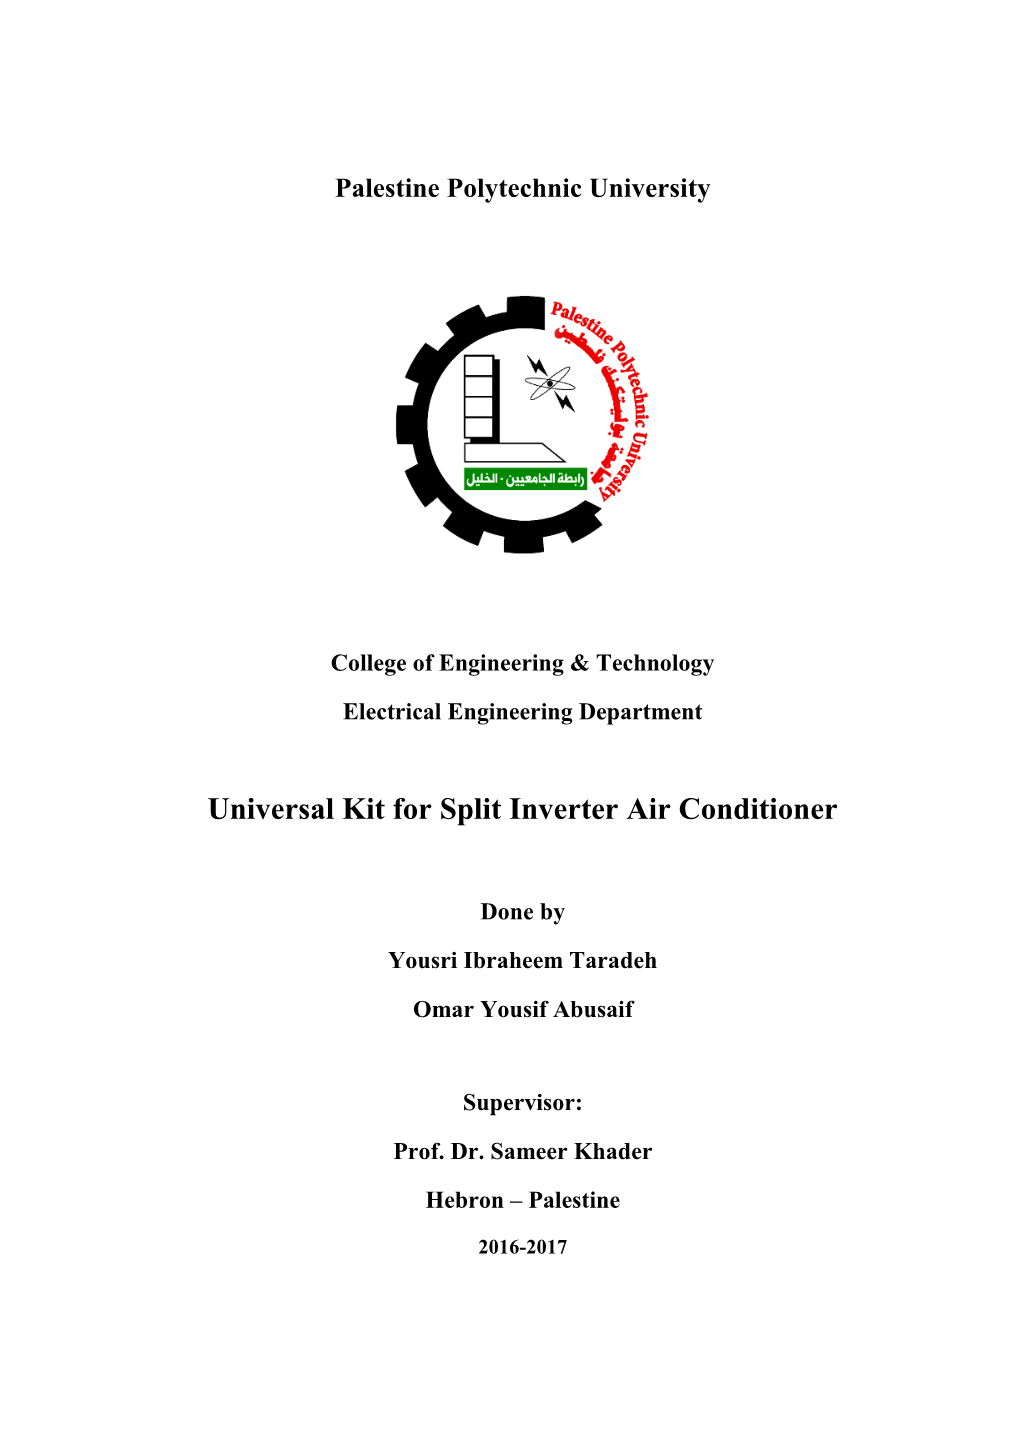 Universal Kit for Split Inverter Air Conditioner